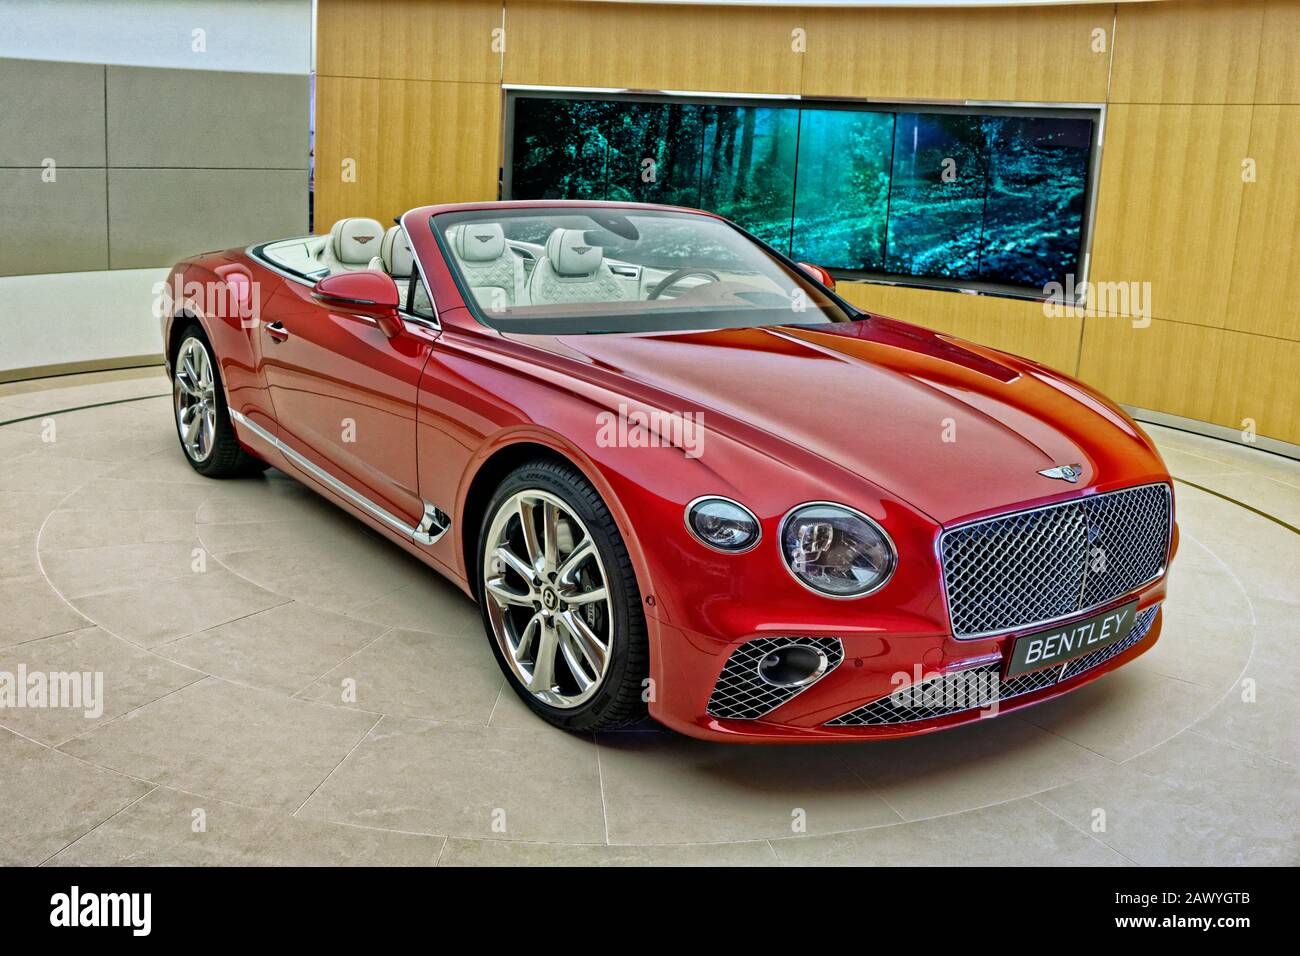 Bentley convertible immagini e fotografie stock ad alta risoluzione - Alamy